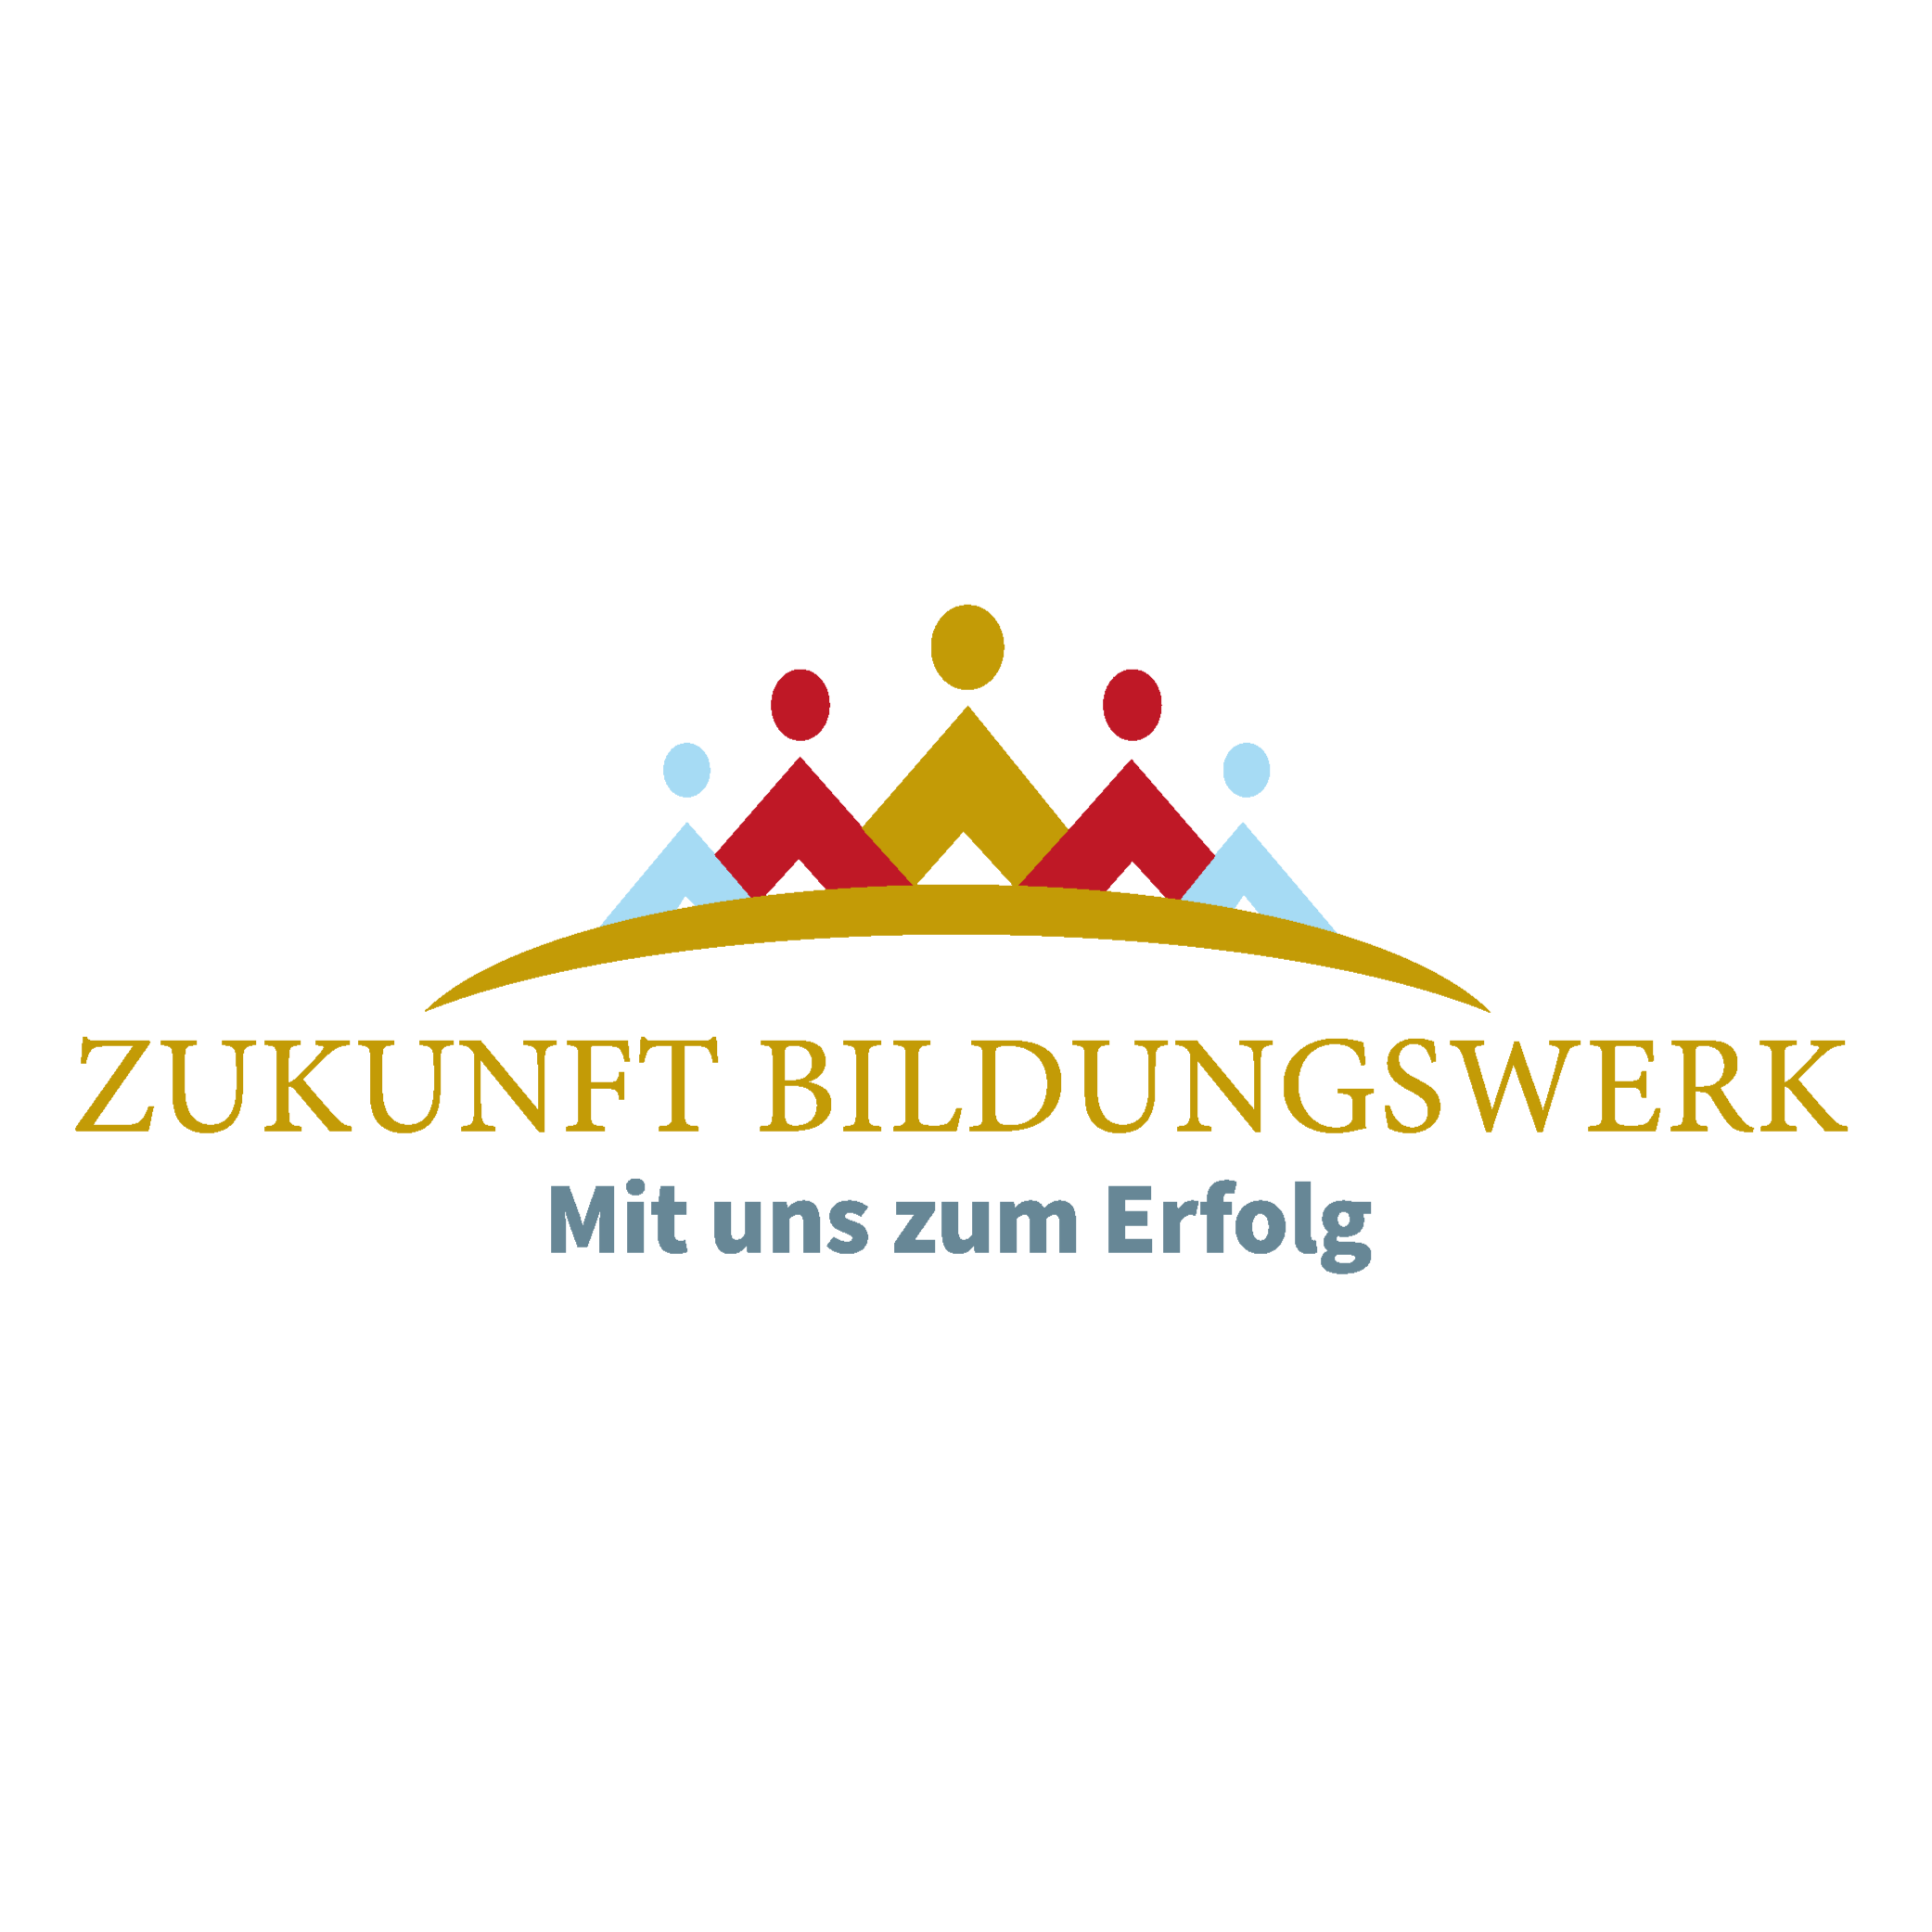 Zukunft Bildungswerk in Gladbeck - Logo